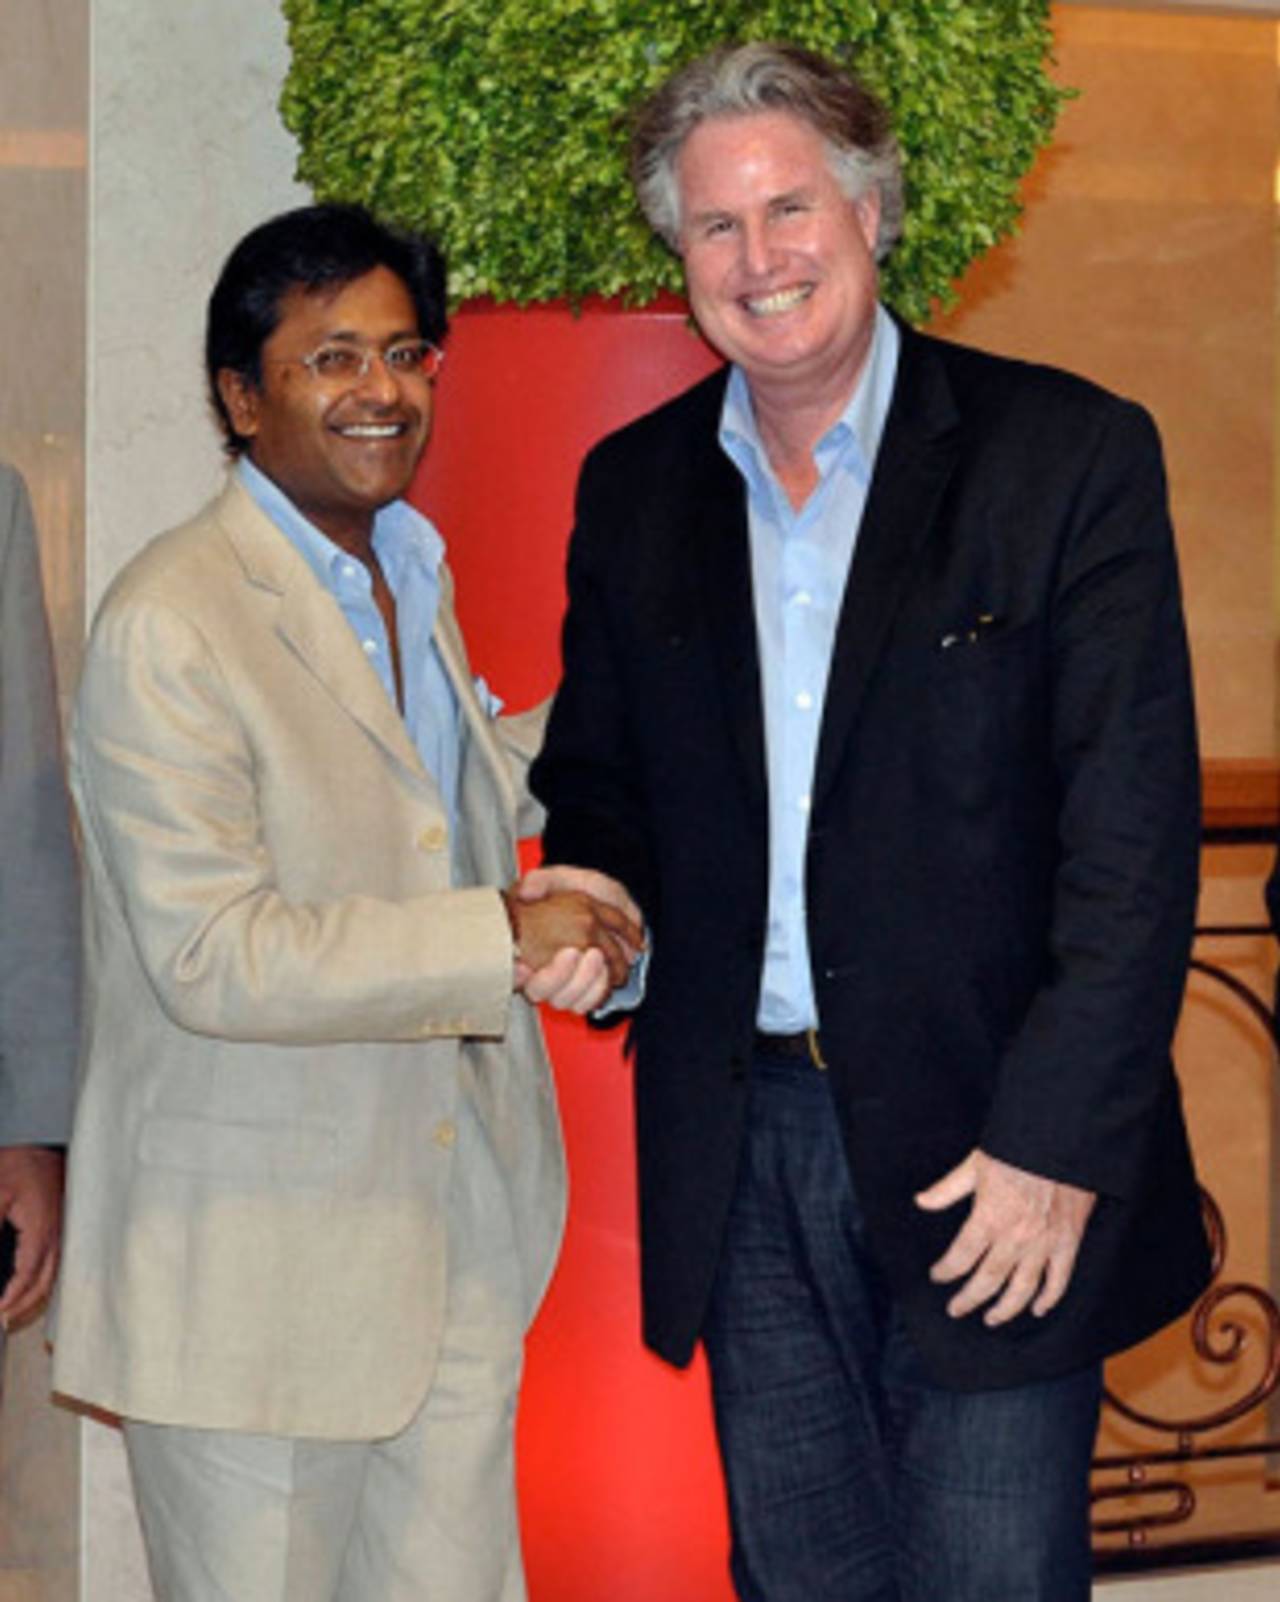 Don Lockerbie met Lalit Modi in Dubai earlier this week&nbsp;&nbsp;&bull;&nbsp;&nbsp;Daniela Zaharia/USACA